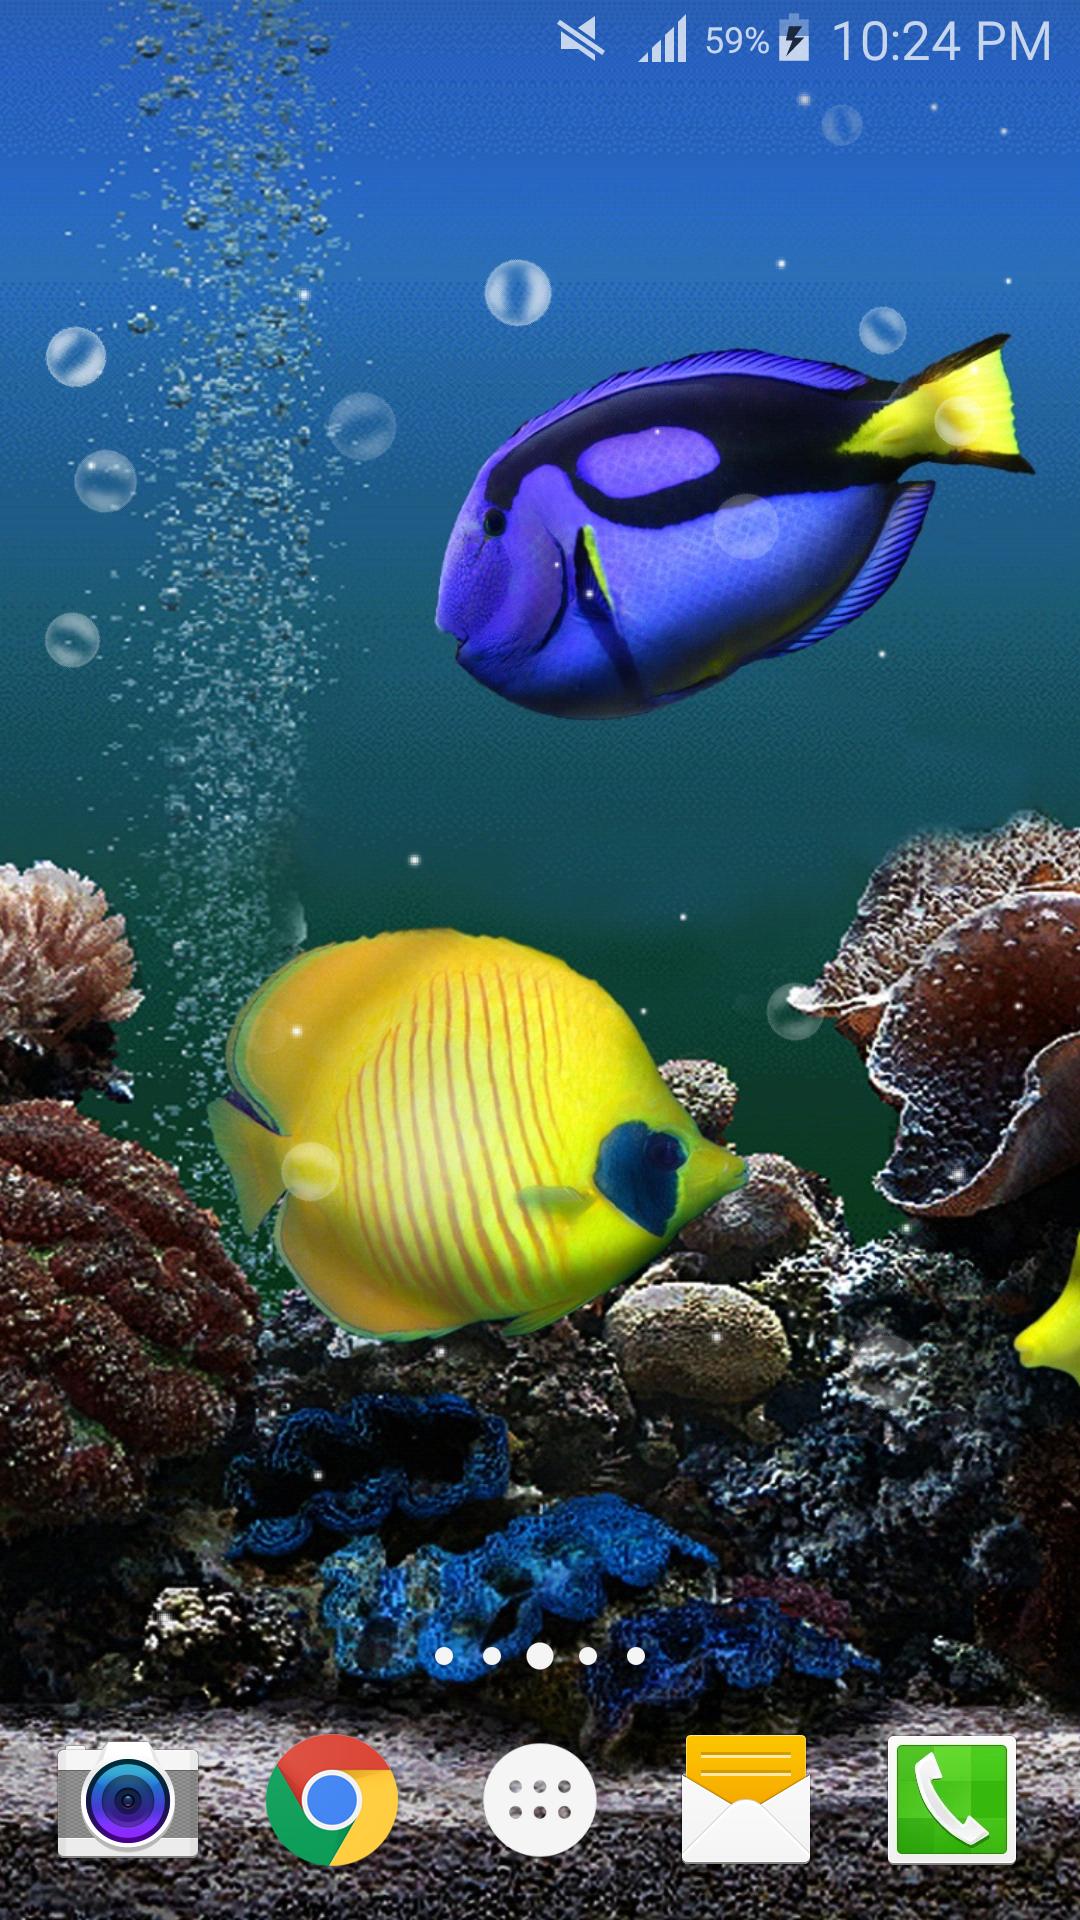 Android 用の オーシャン魚ライブ壁紙無料 Apk をダウンロード